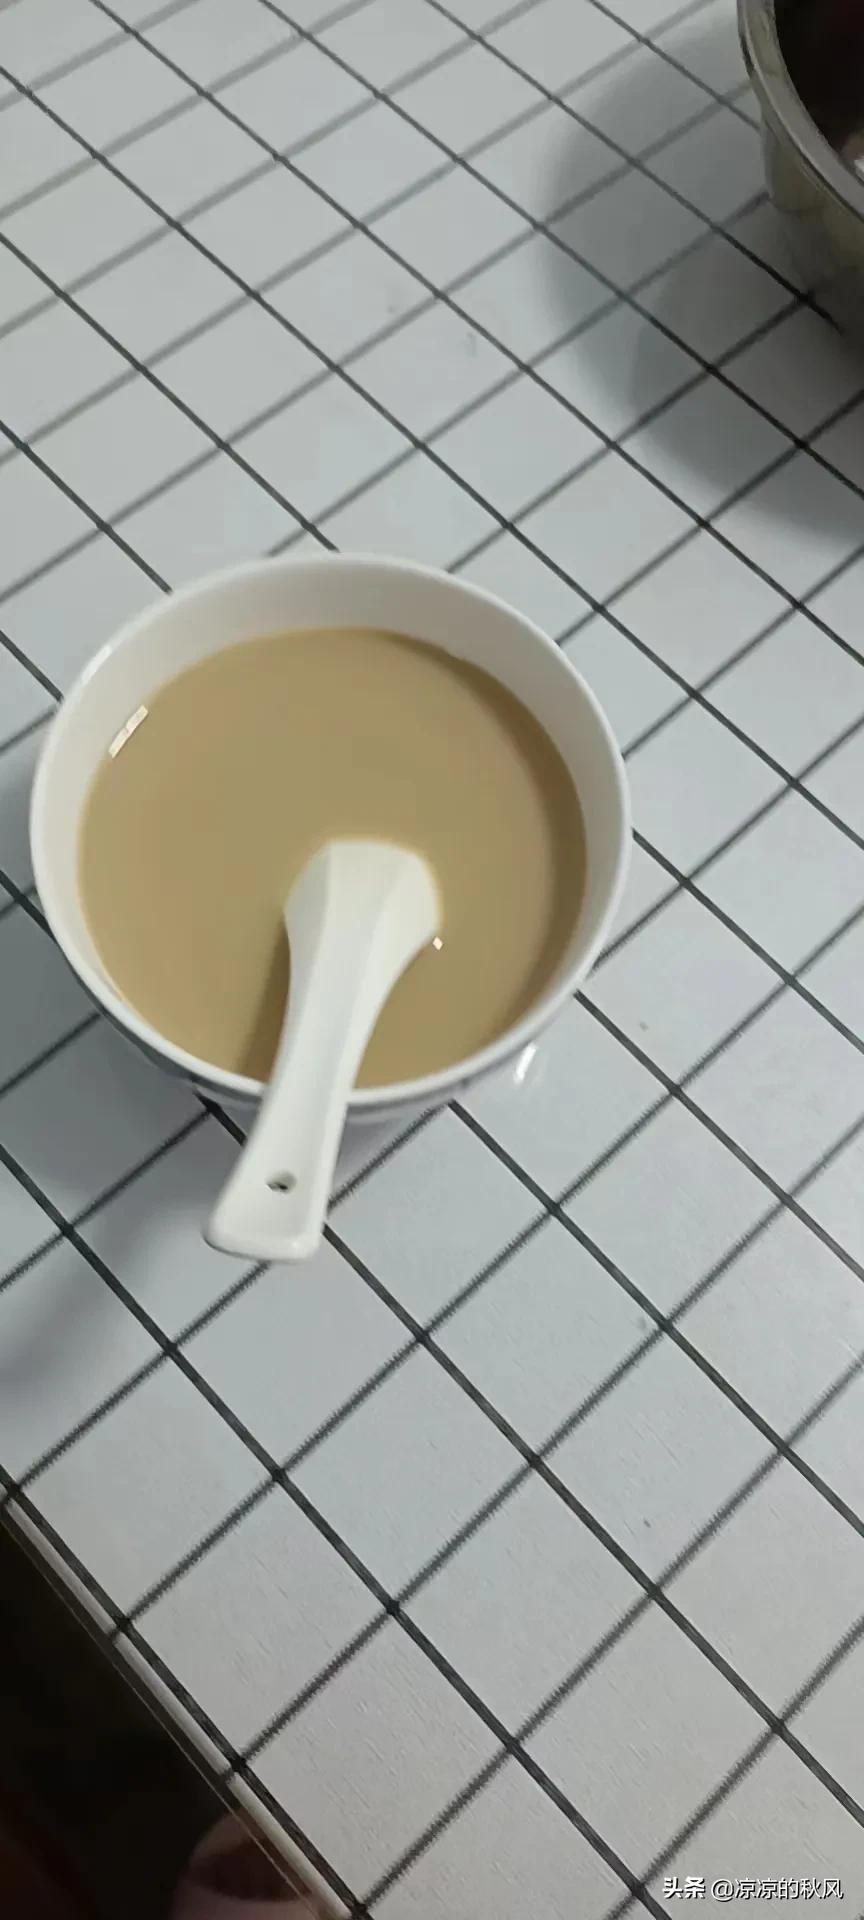 我在家自制家庭自制奶茶，便宜营养健康，可以放心地给孩子喝奶茶了